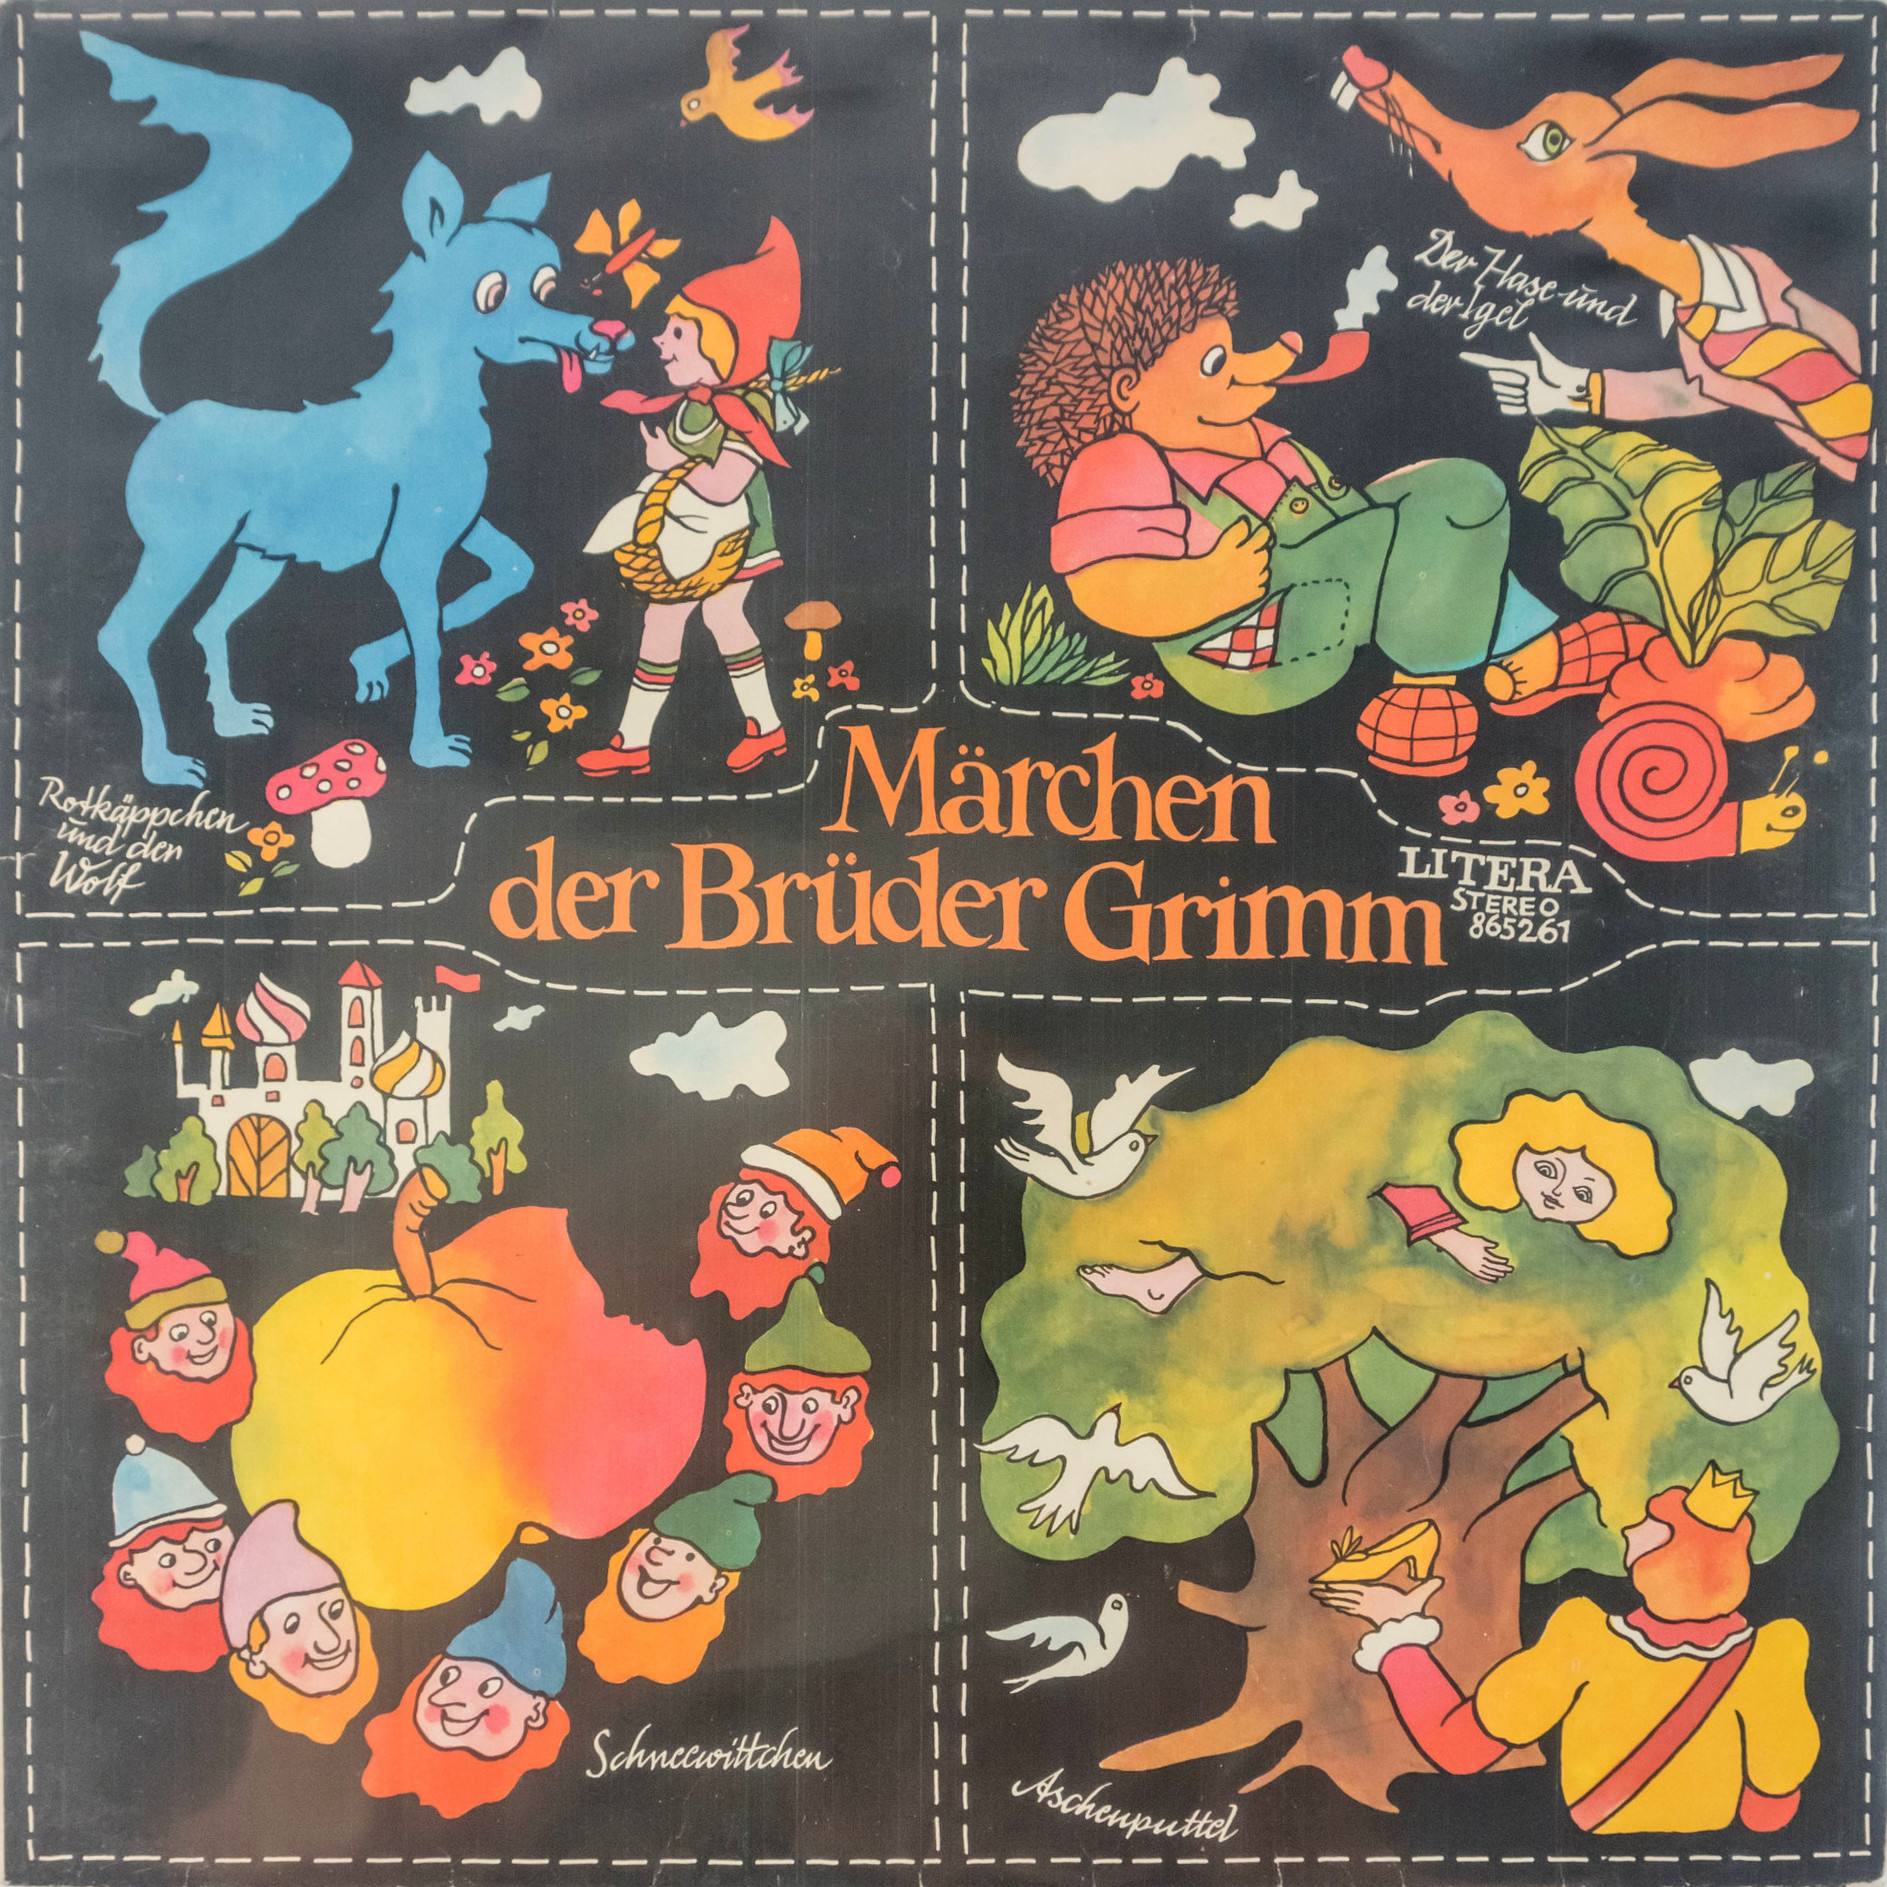 Märchen der Brüder Grimm [по заказу немецкой фирмы LITERA 8 65 261]